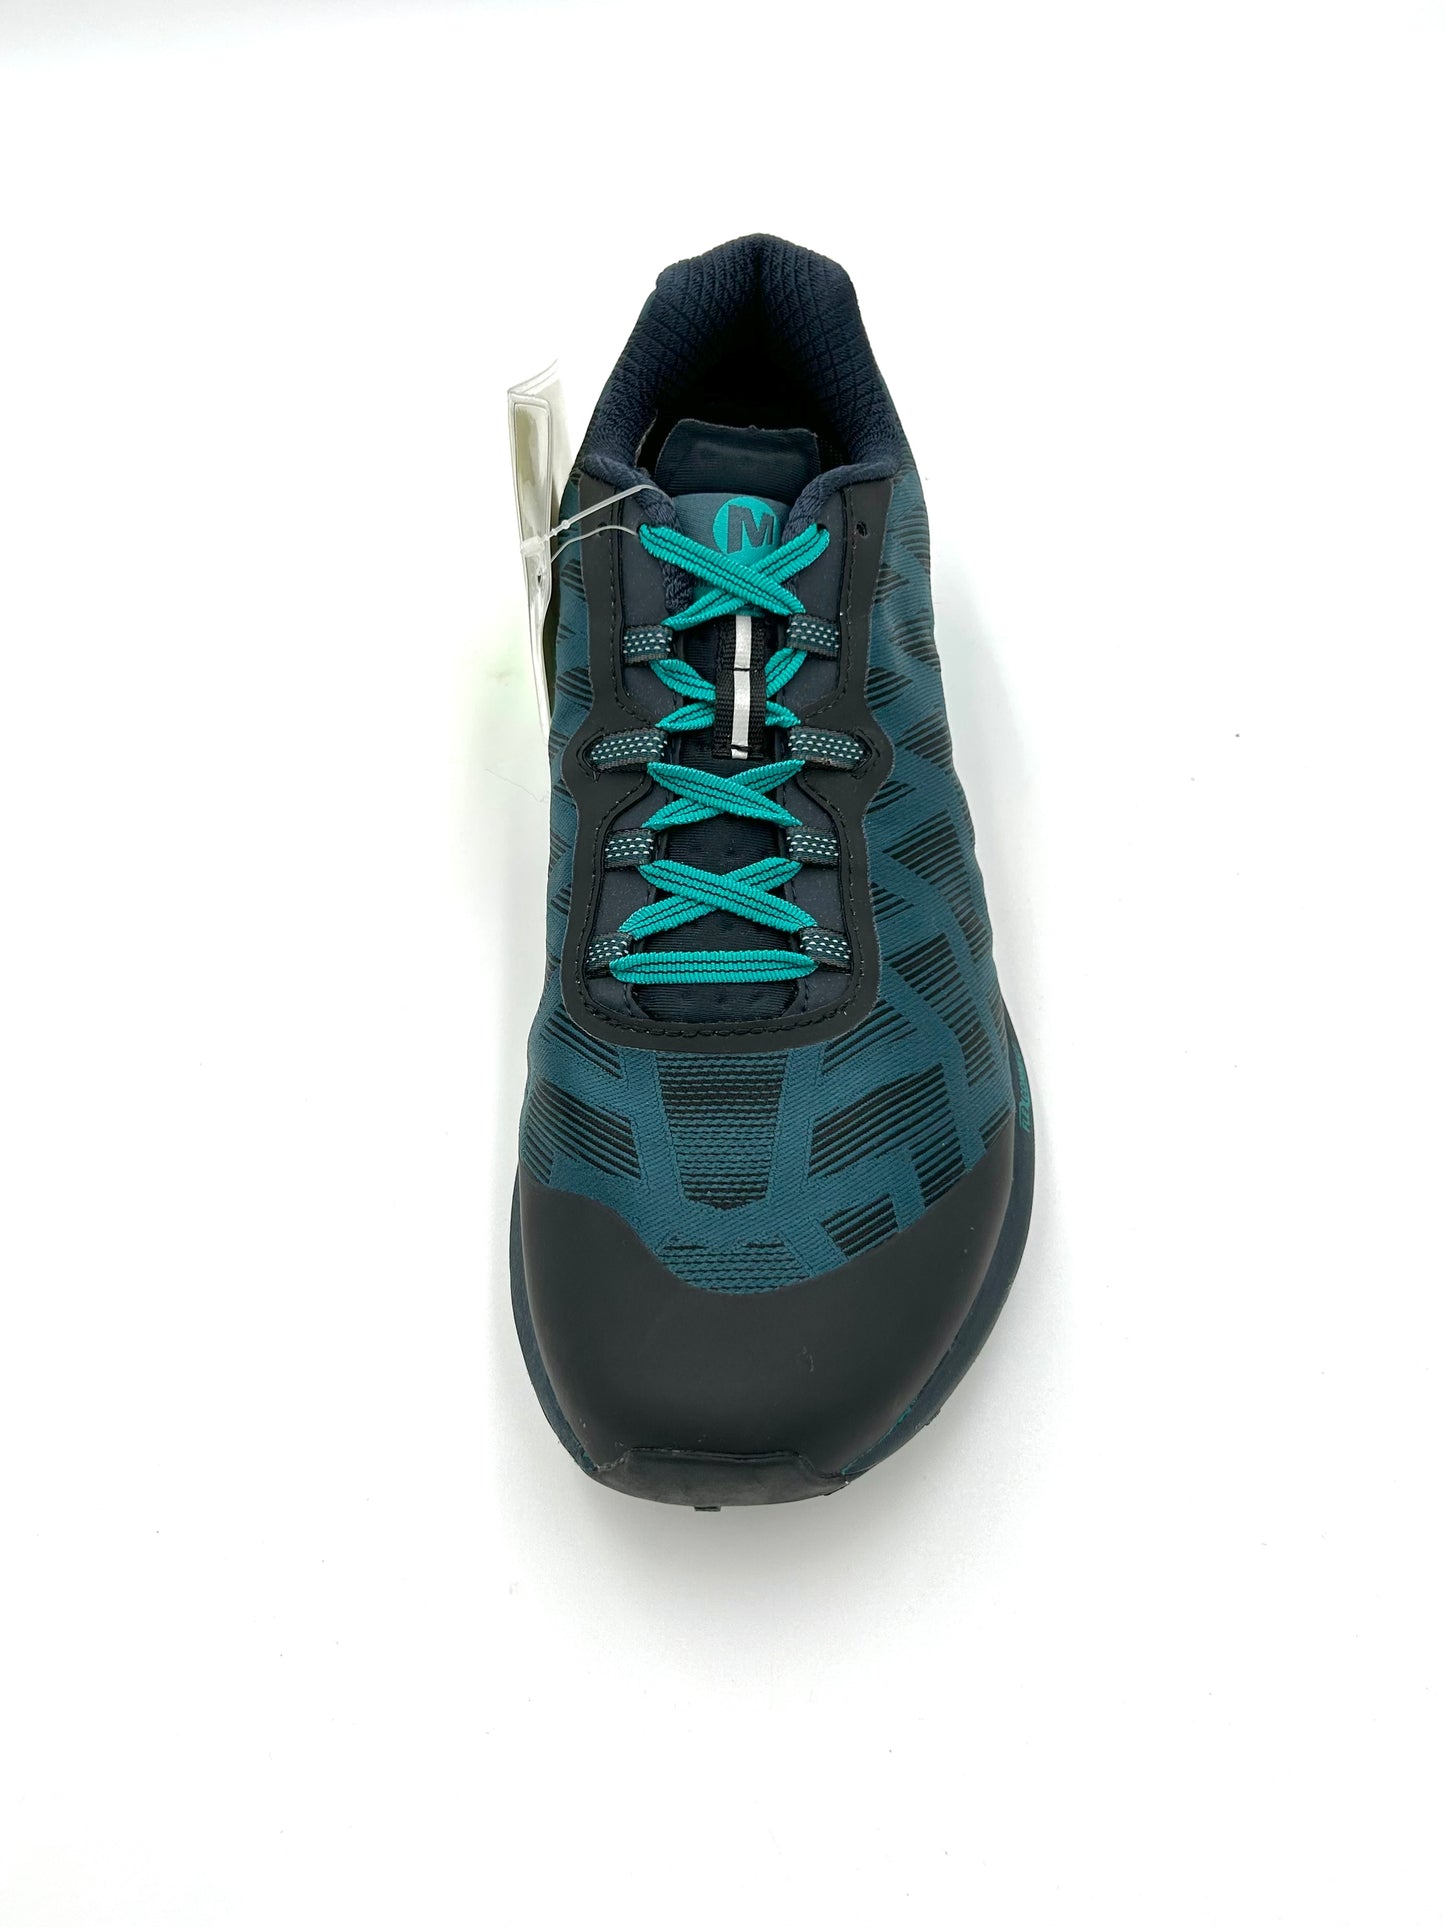 Merrell sneakers training hyperlock - blue - Merrell